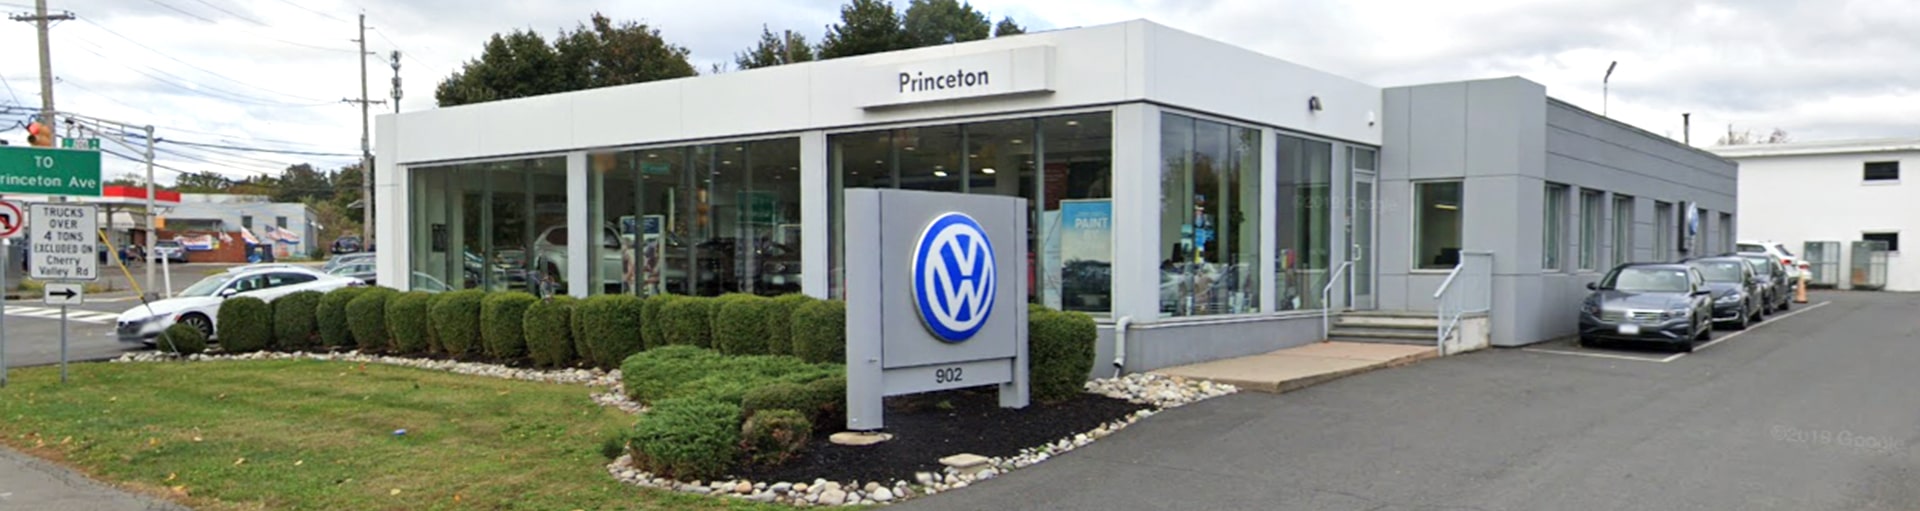 Volkswagen Princeton Diesel Oil Change